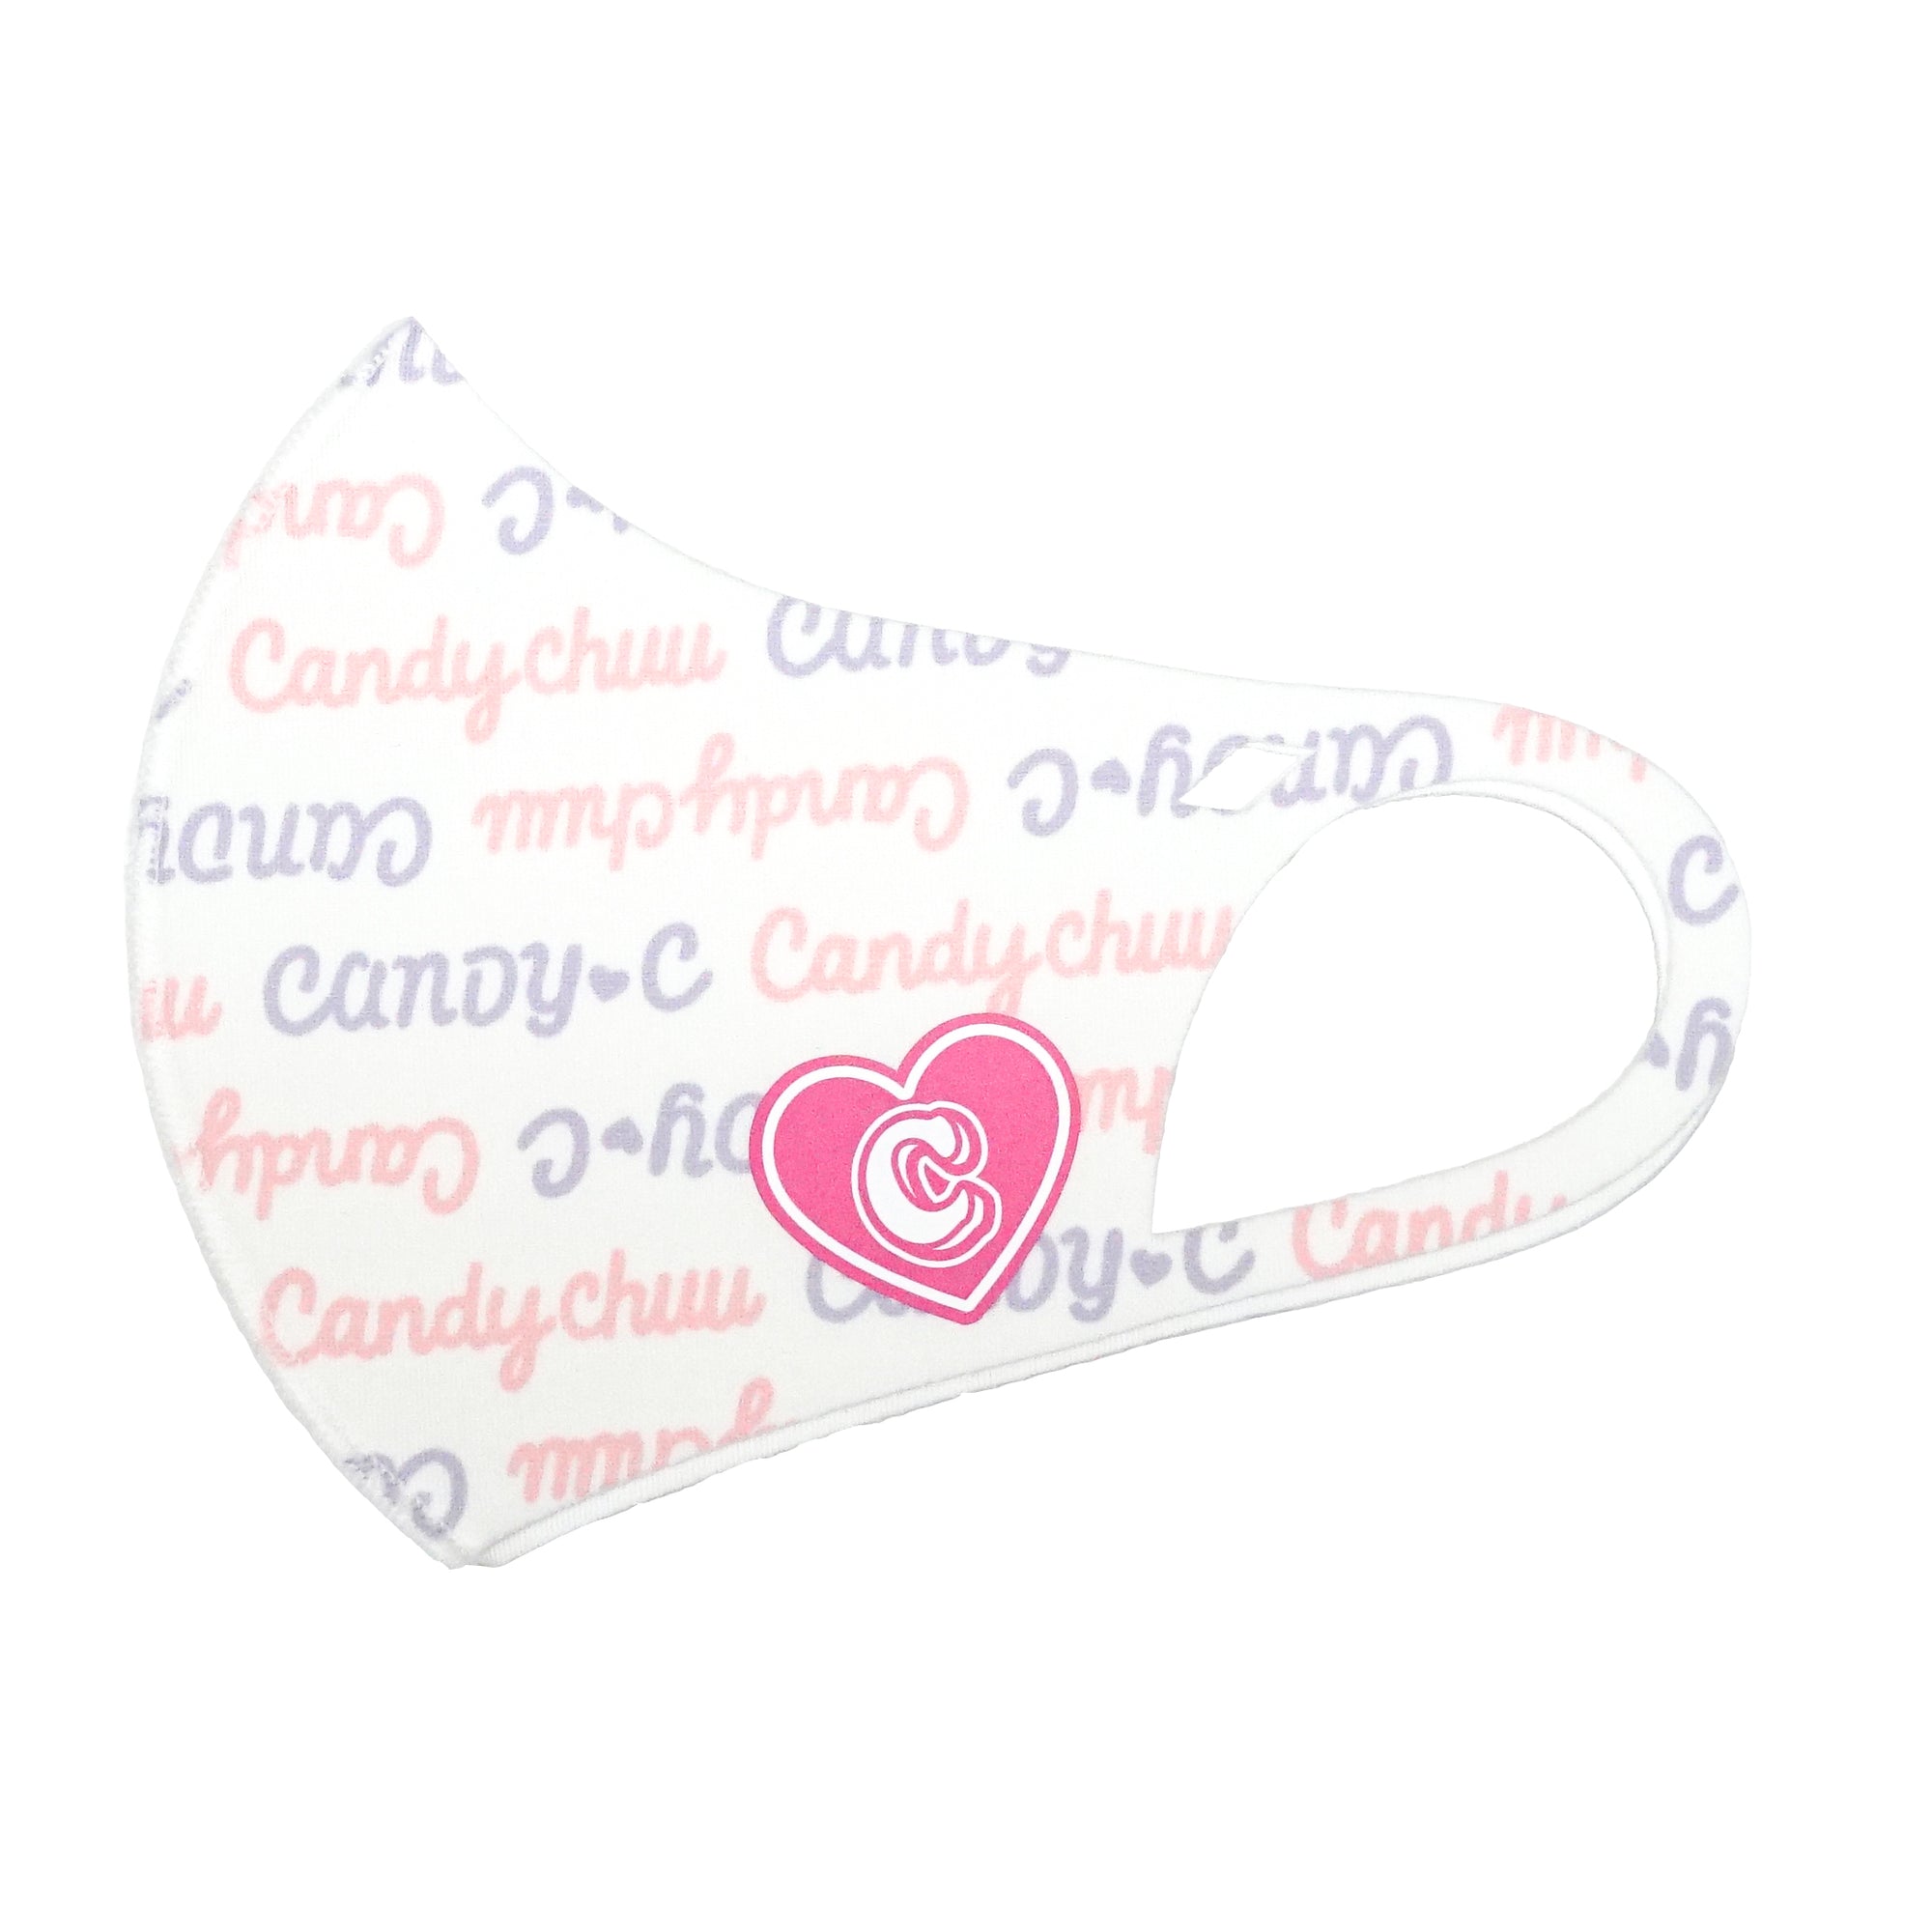 (40%オフ! セール商品)Candychuu  総柄 ハートロゴ マスク (20055302)